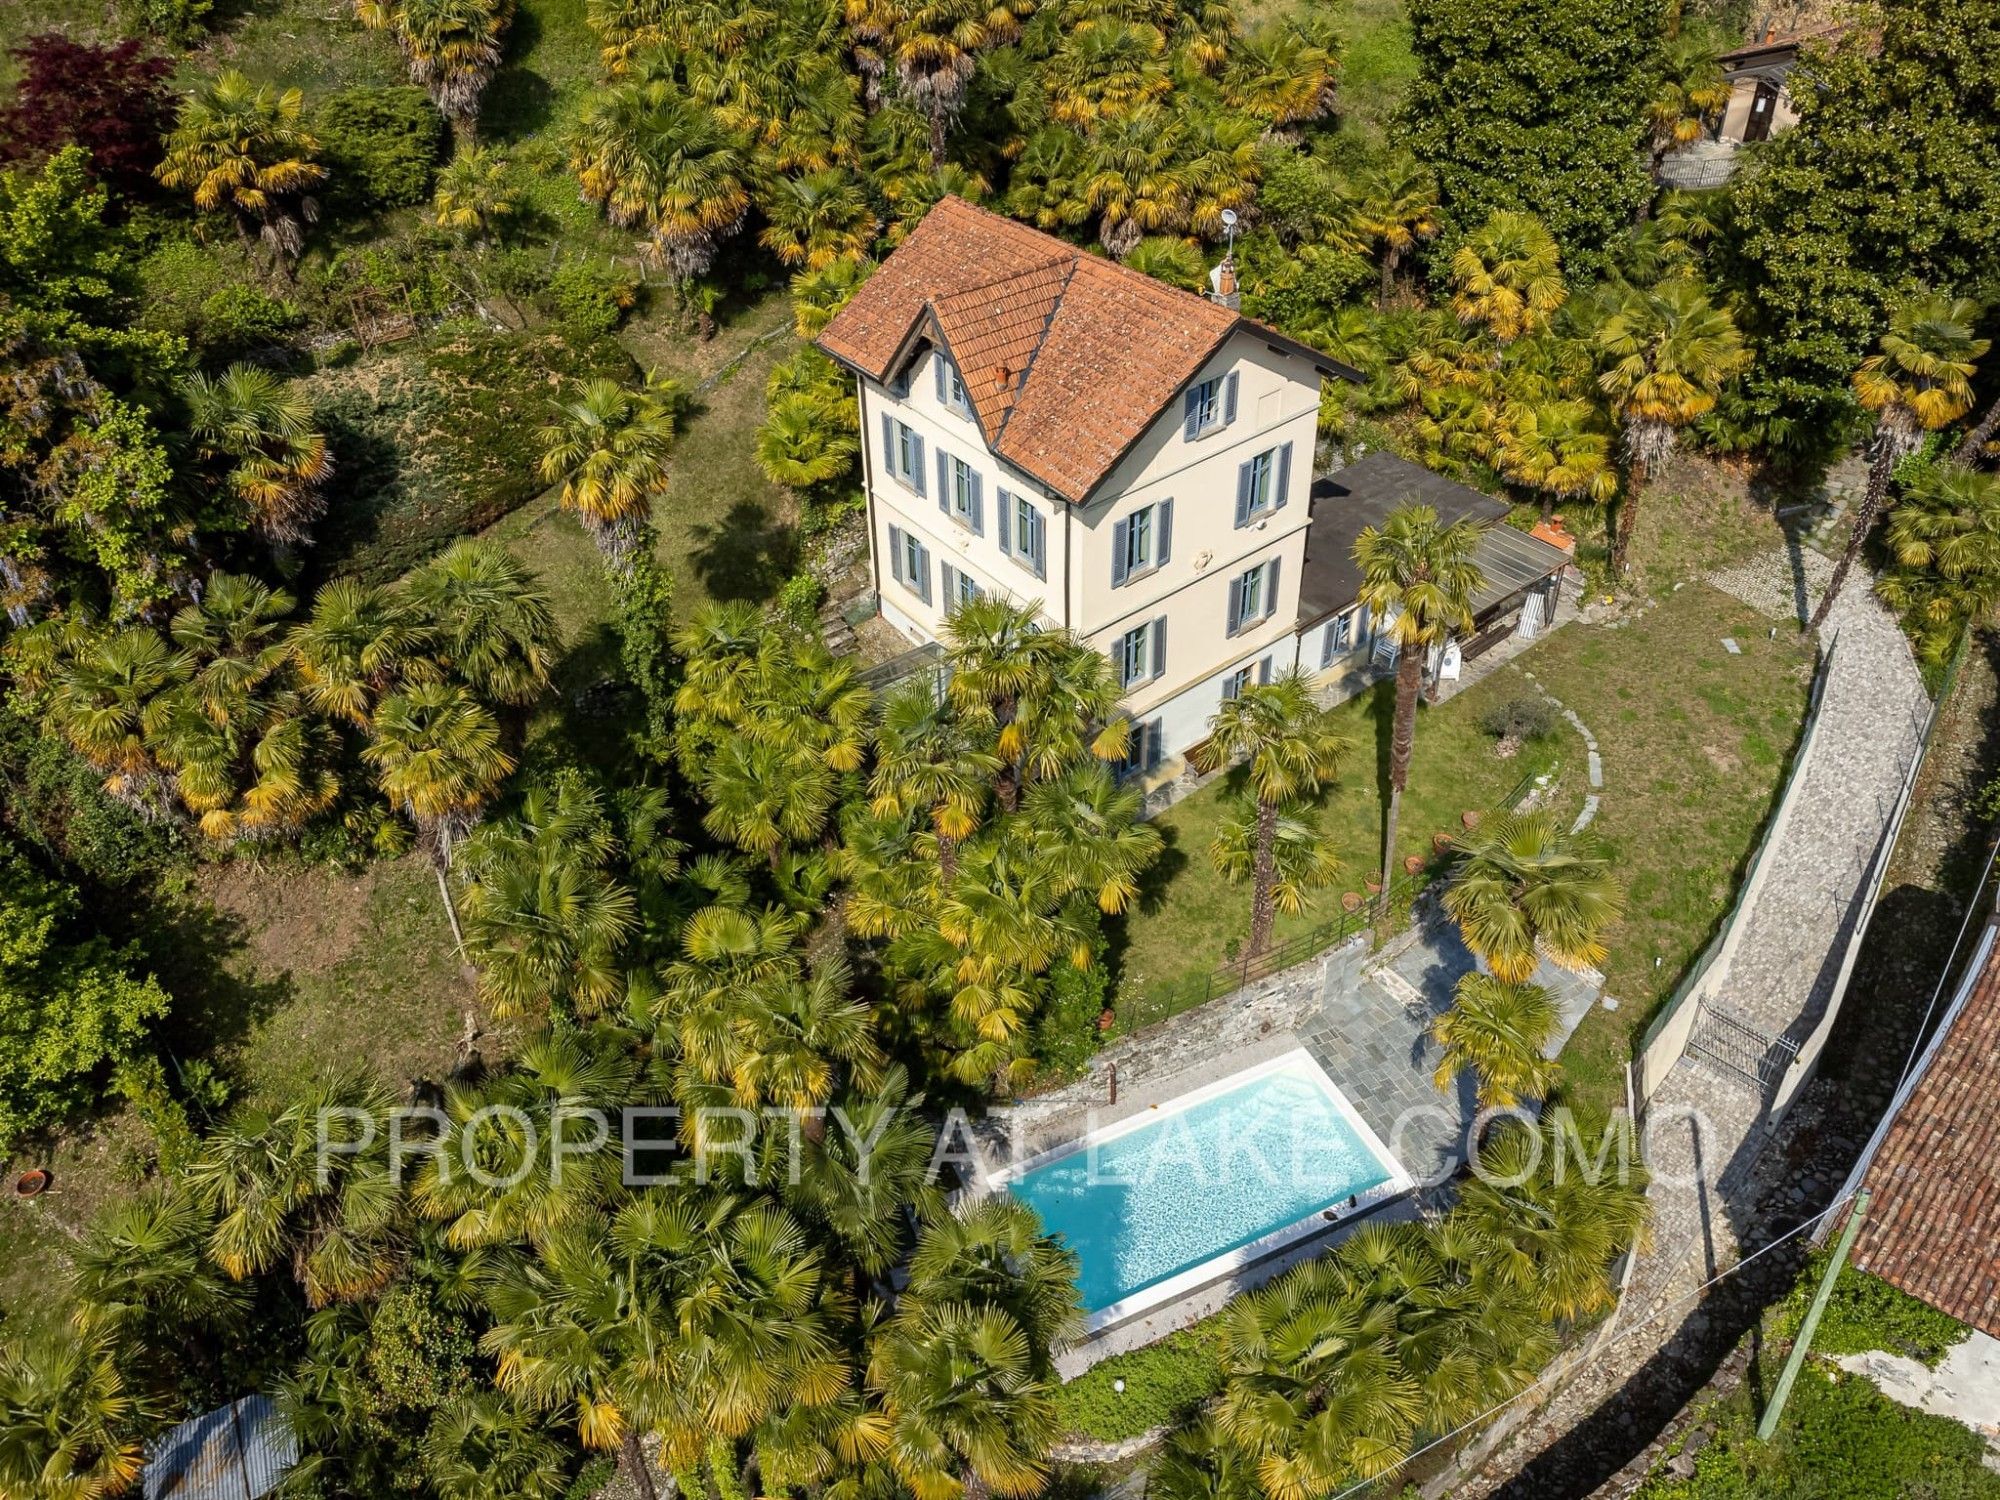 Fotos Villa Carlottina in Tremezzo mit tollem Garten, Privatspähre und Pool